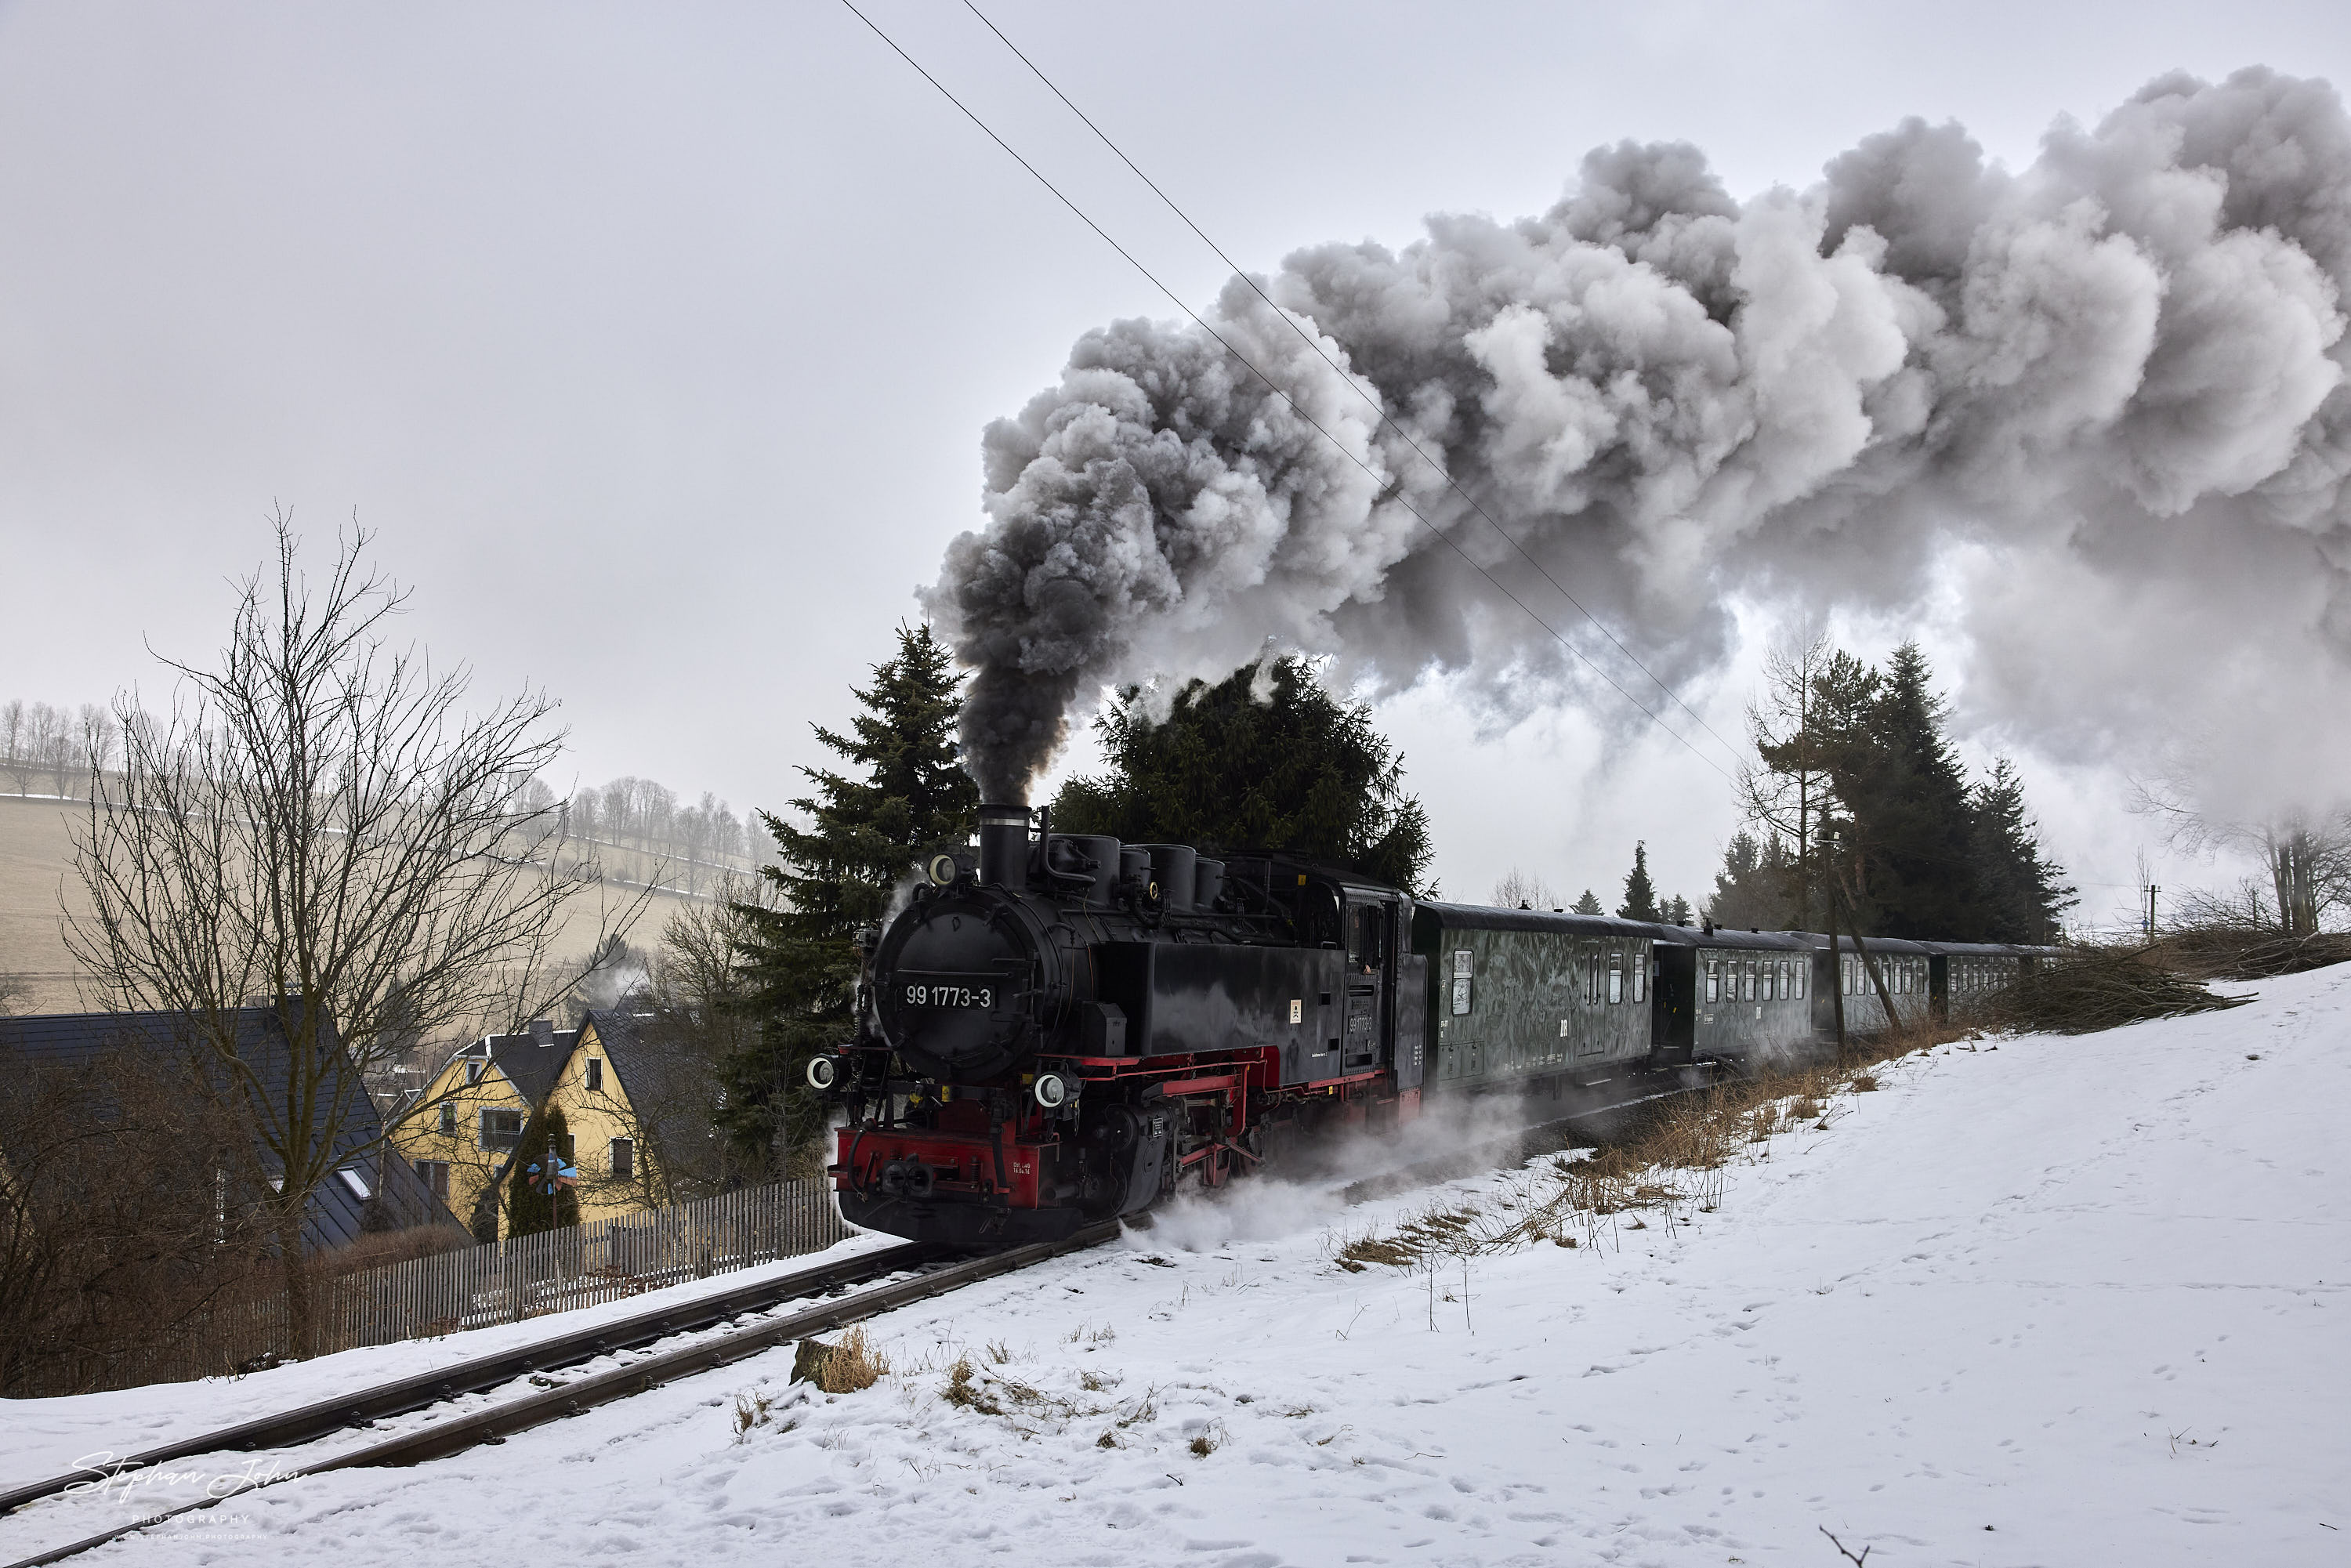 Zug 1101 mit Lok 99 1773-3 verlässt die Ortslage Cranzahl und dampft in Richtung Oberwiesenthal